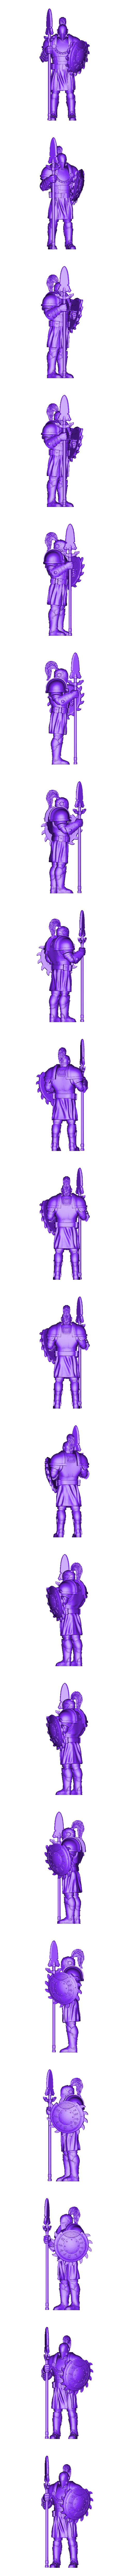 soldies4_52mm.stl Archivo STL Set de 5 soldados medievales (+ versión precompatible) (15) - Oscuridad Caos Medieval Age of Sigmar Fantasy Warhammer・Diseño de impresora 3D para descargar, Hartolia-Miniatures